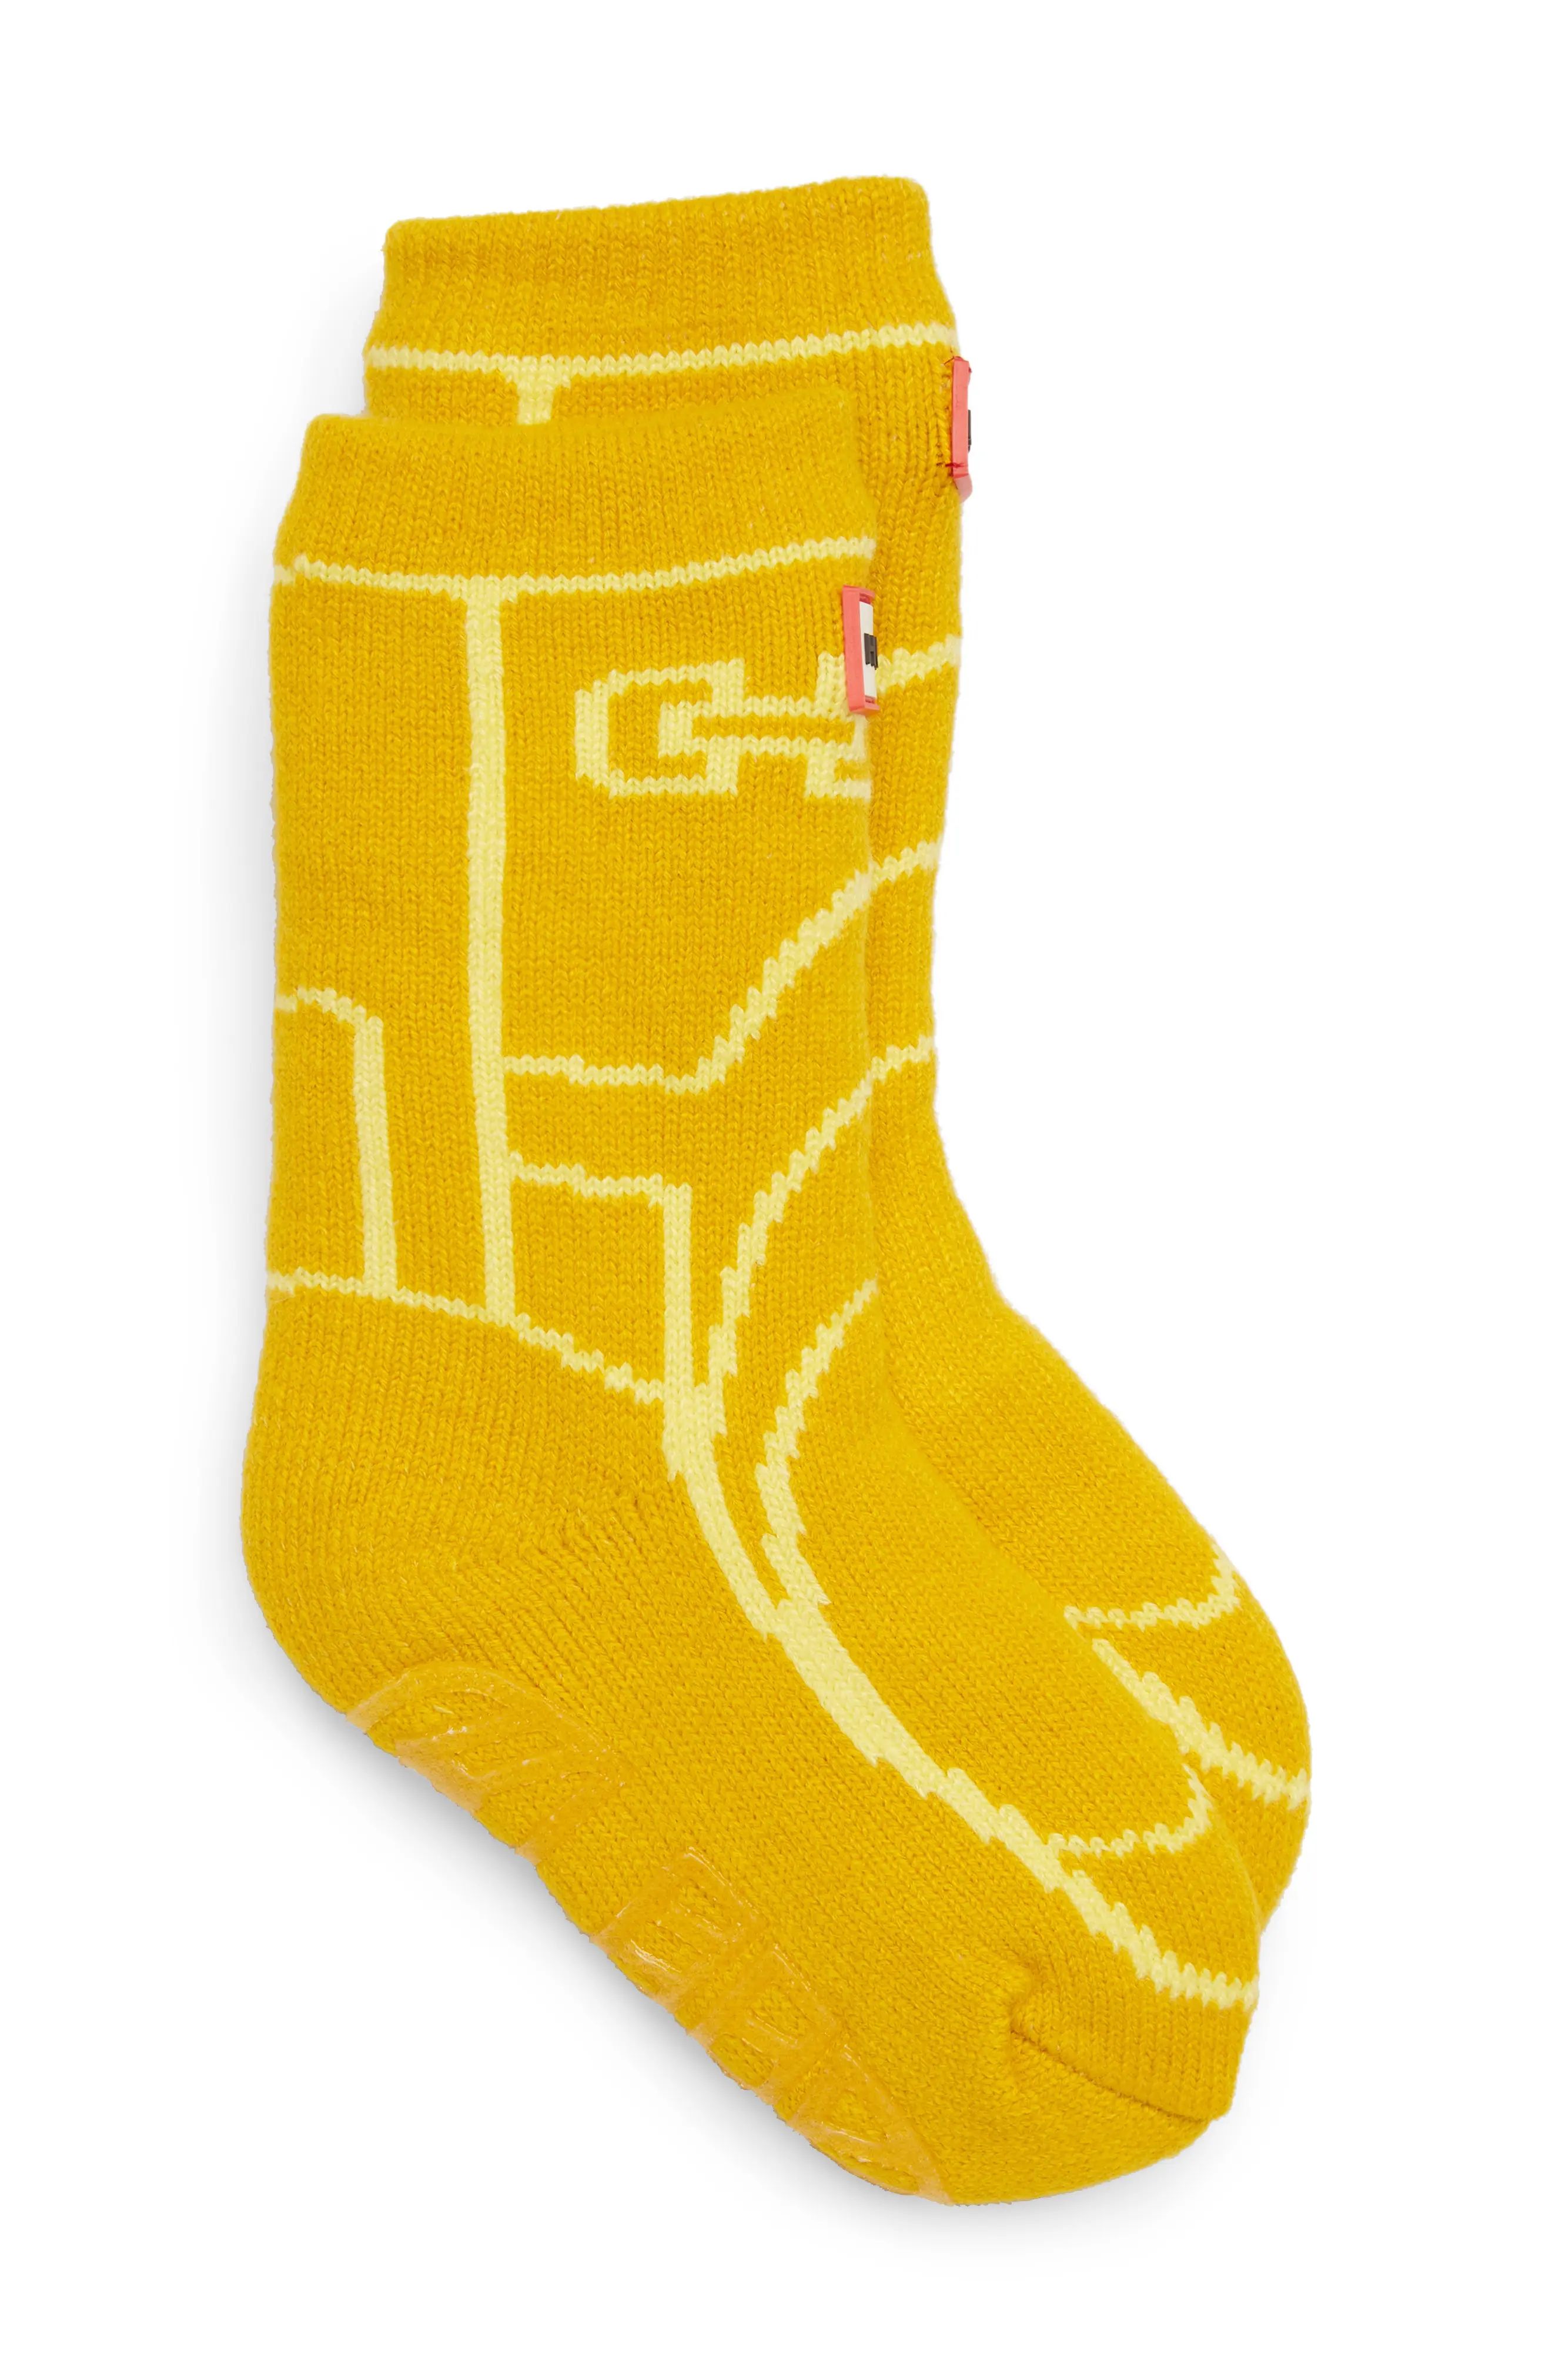 Hunter Original Boot Slipper Socks, Size Large - Yellow | Nordstrom